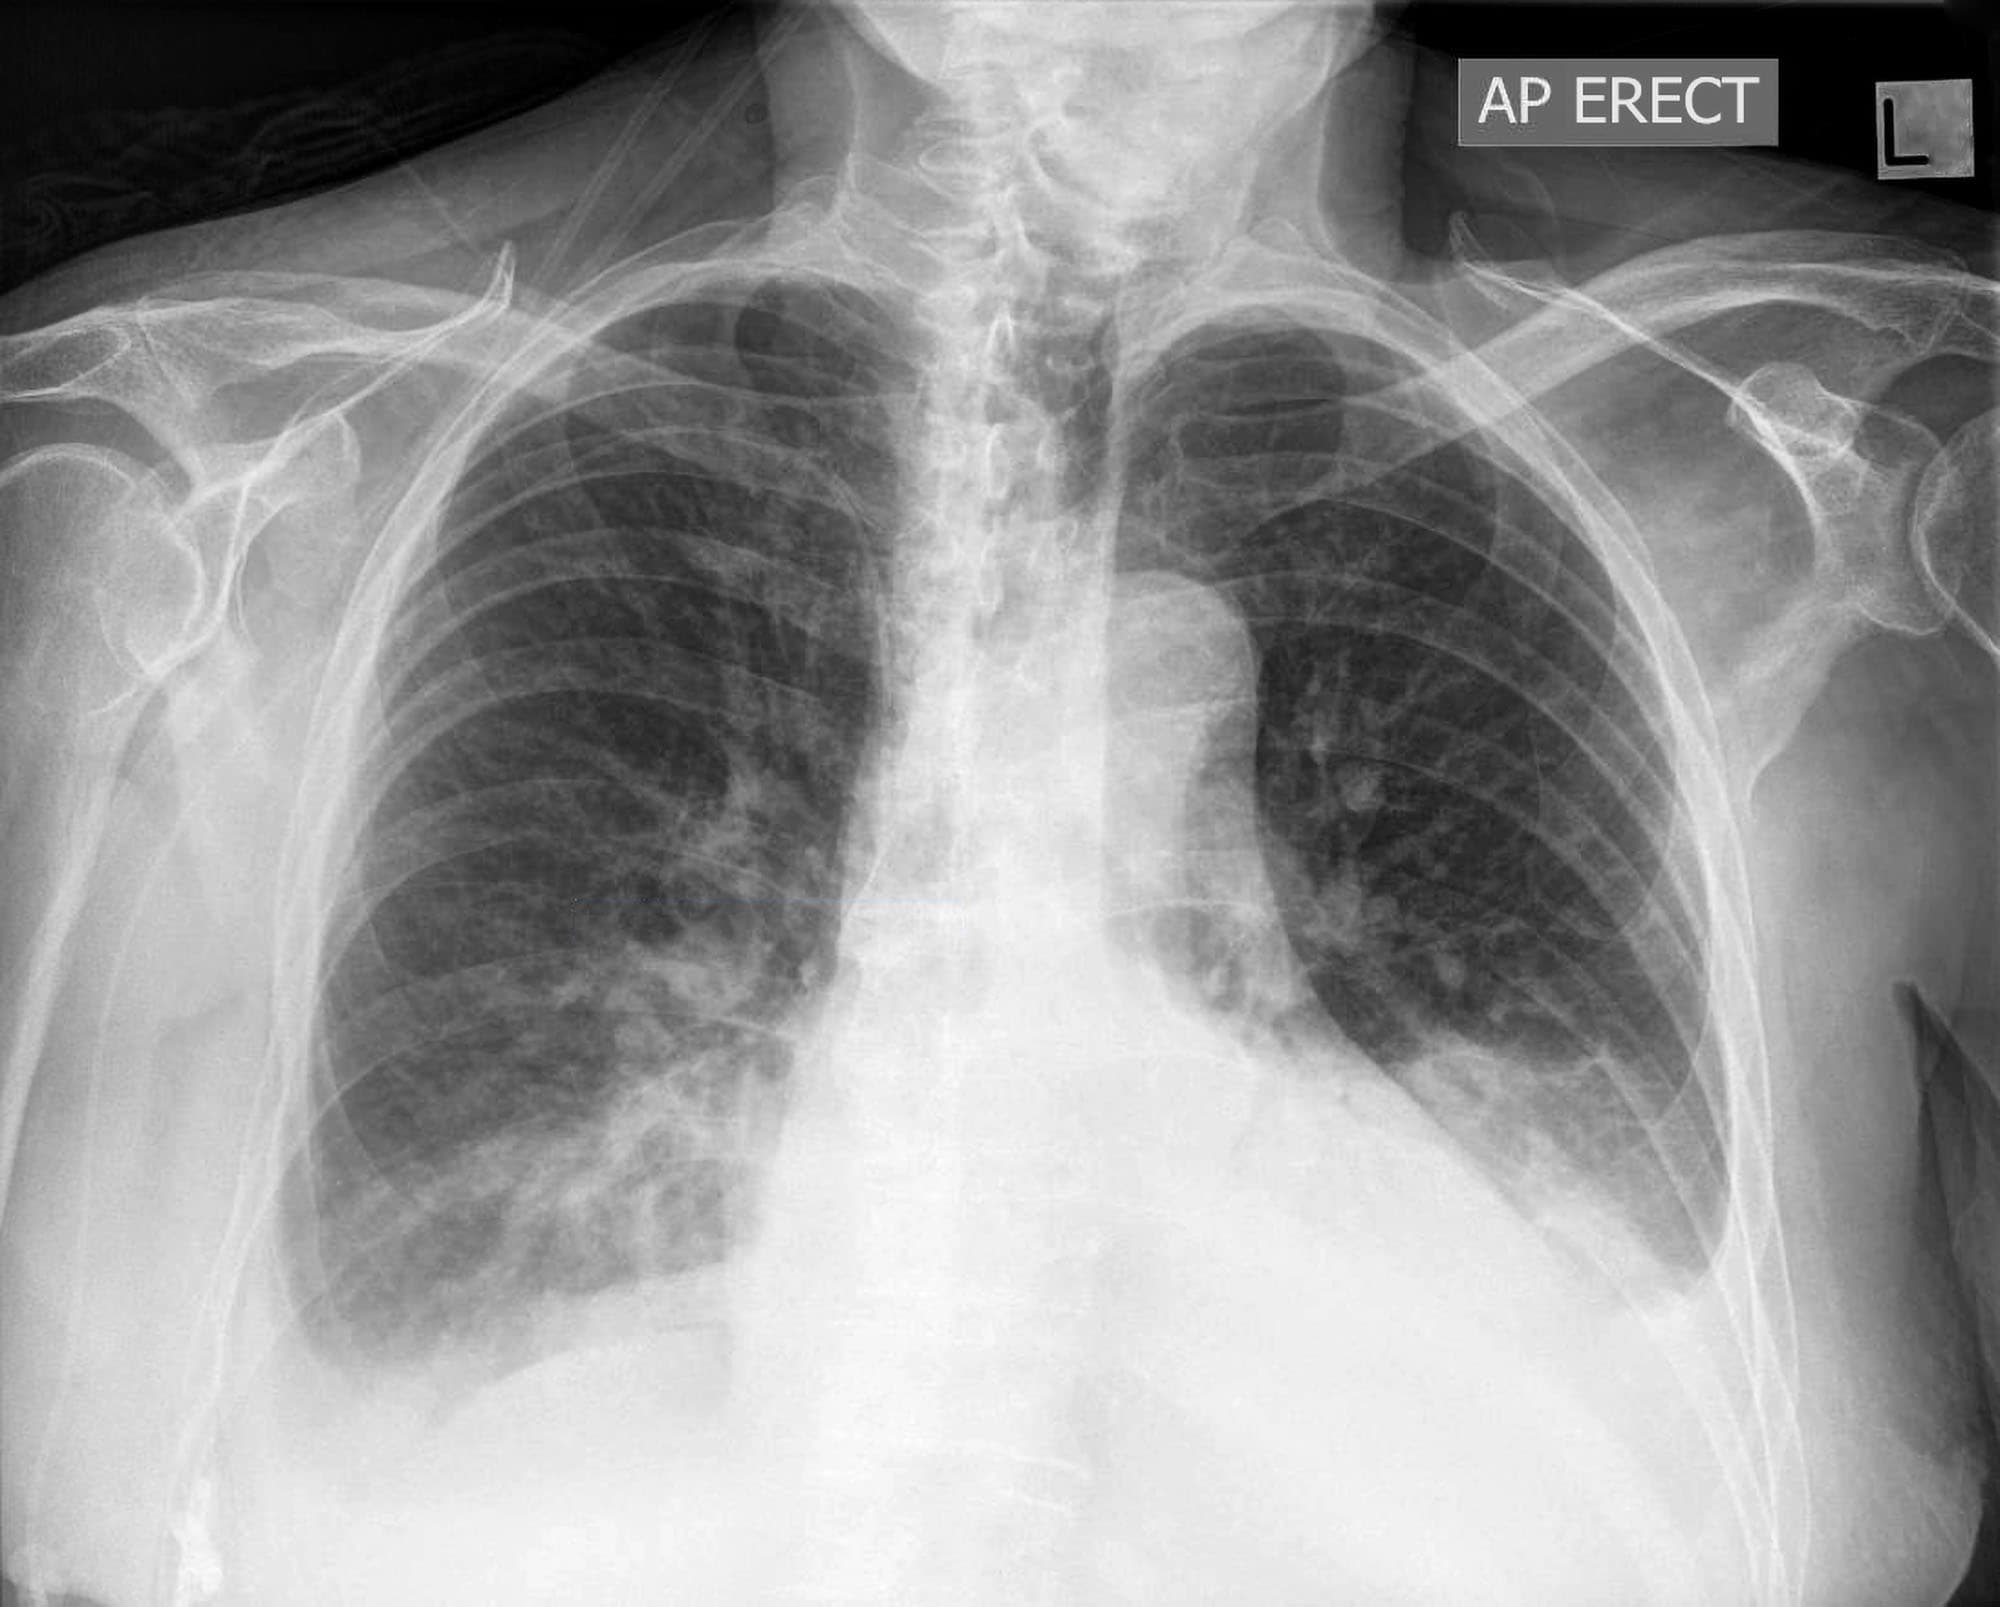 pleural effusion chest x ray